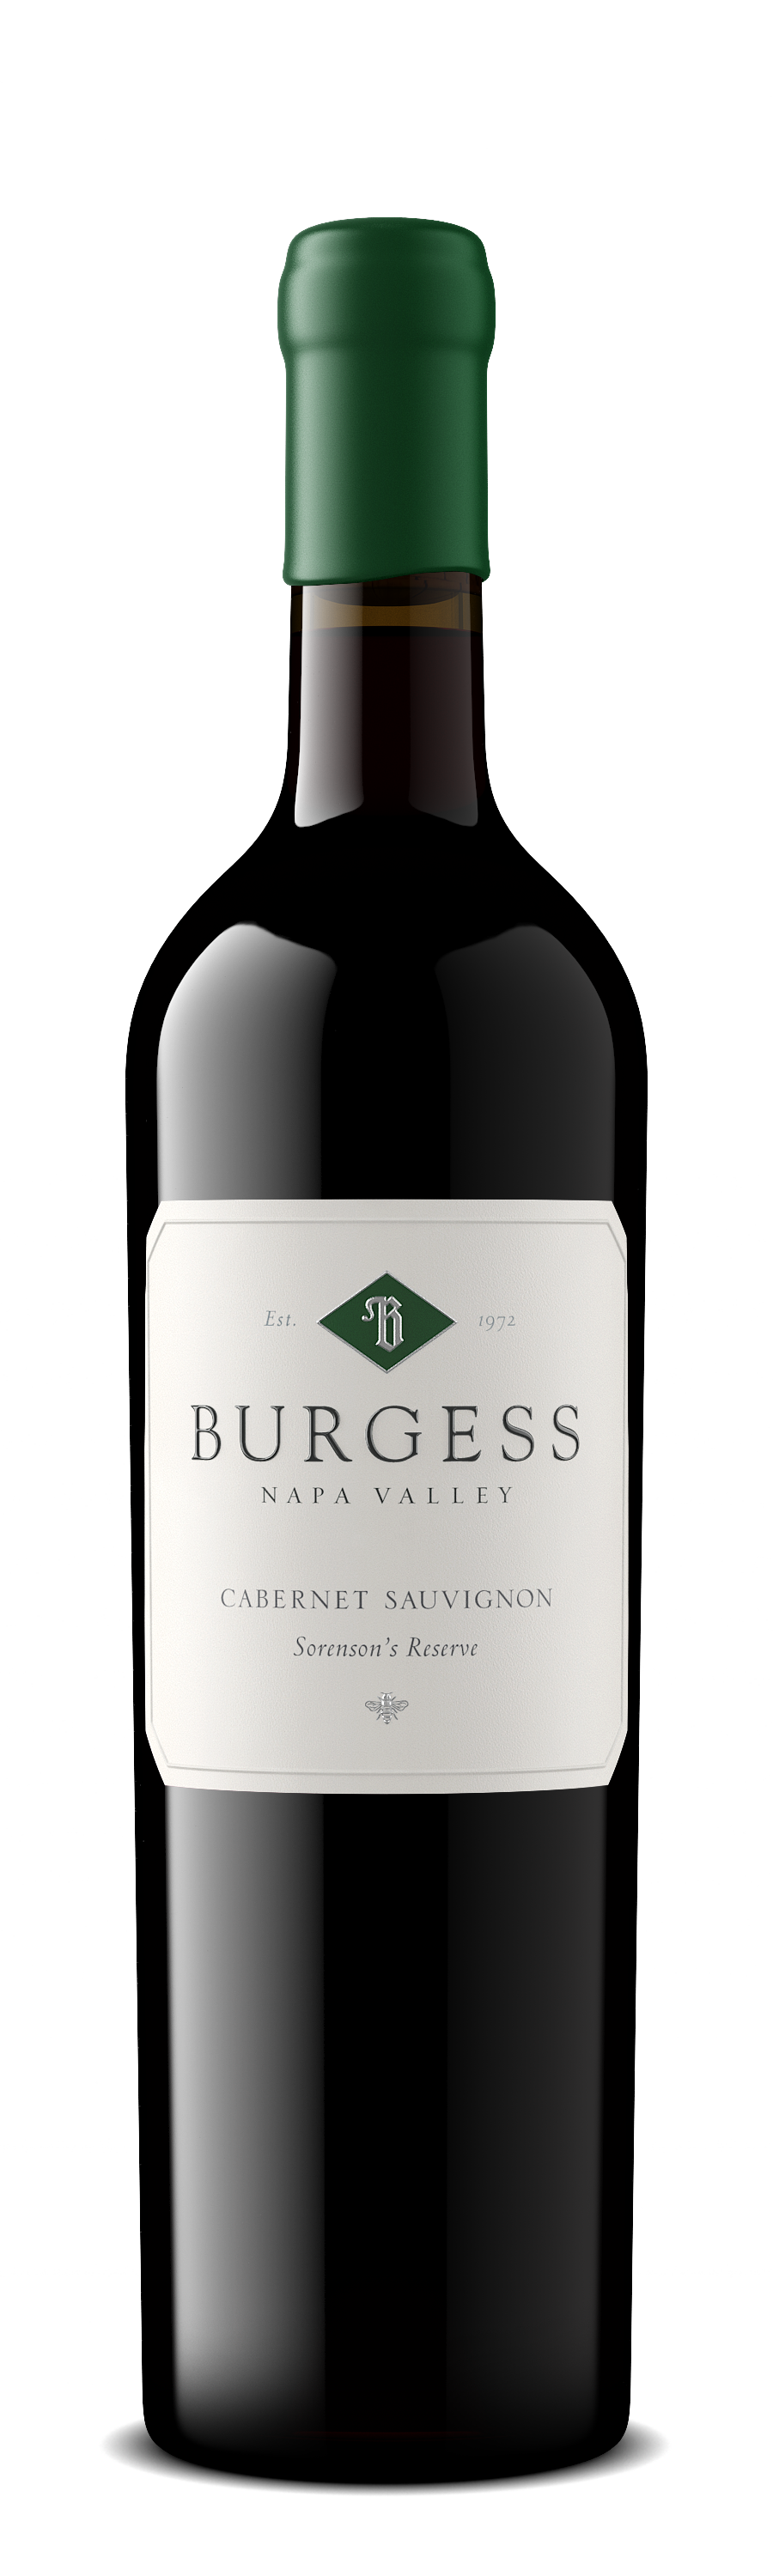 Burgess Sorenson's Reserve Cabernet Sauvignon bottle image, transparent background, non-vintage